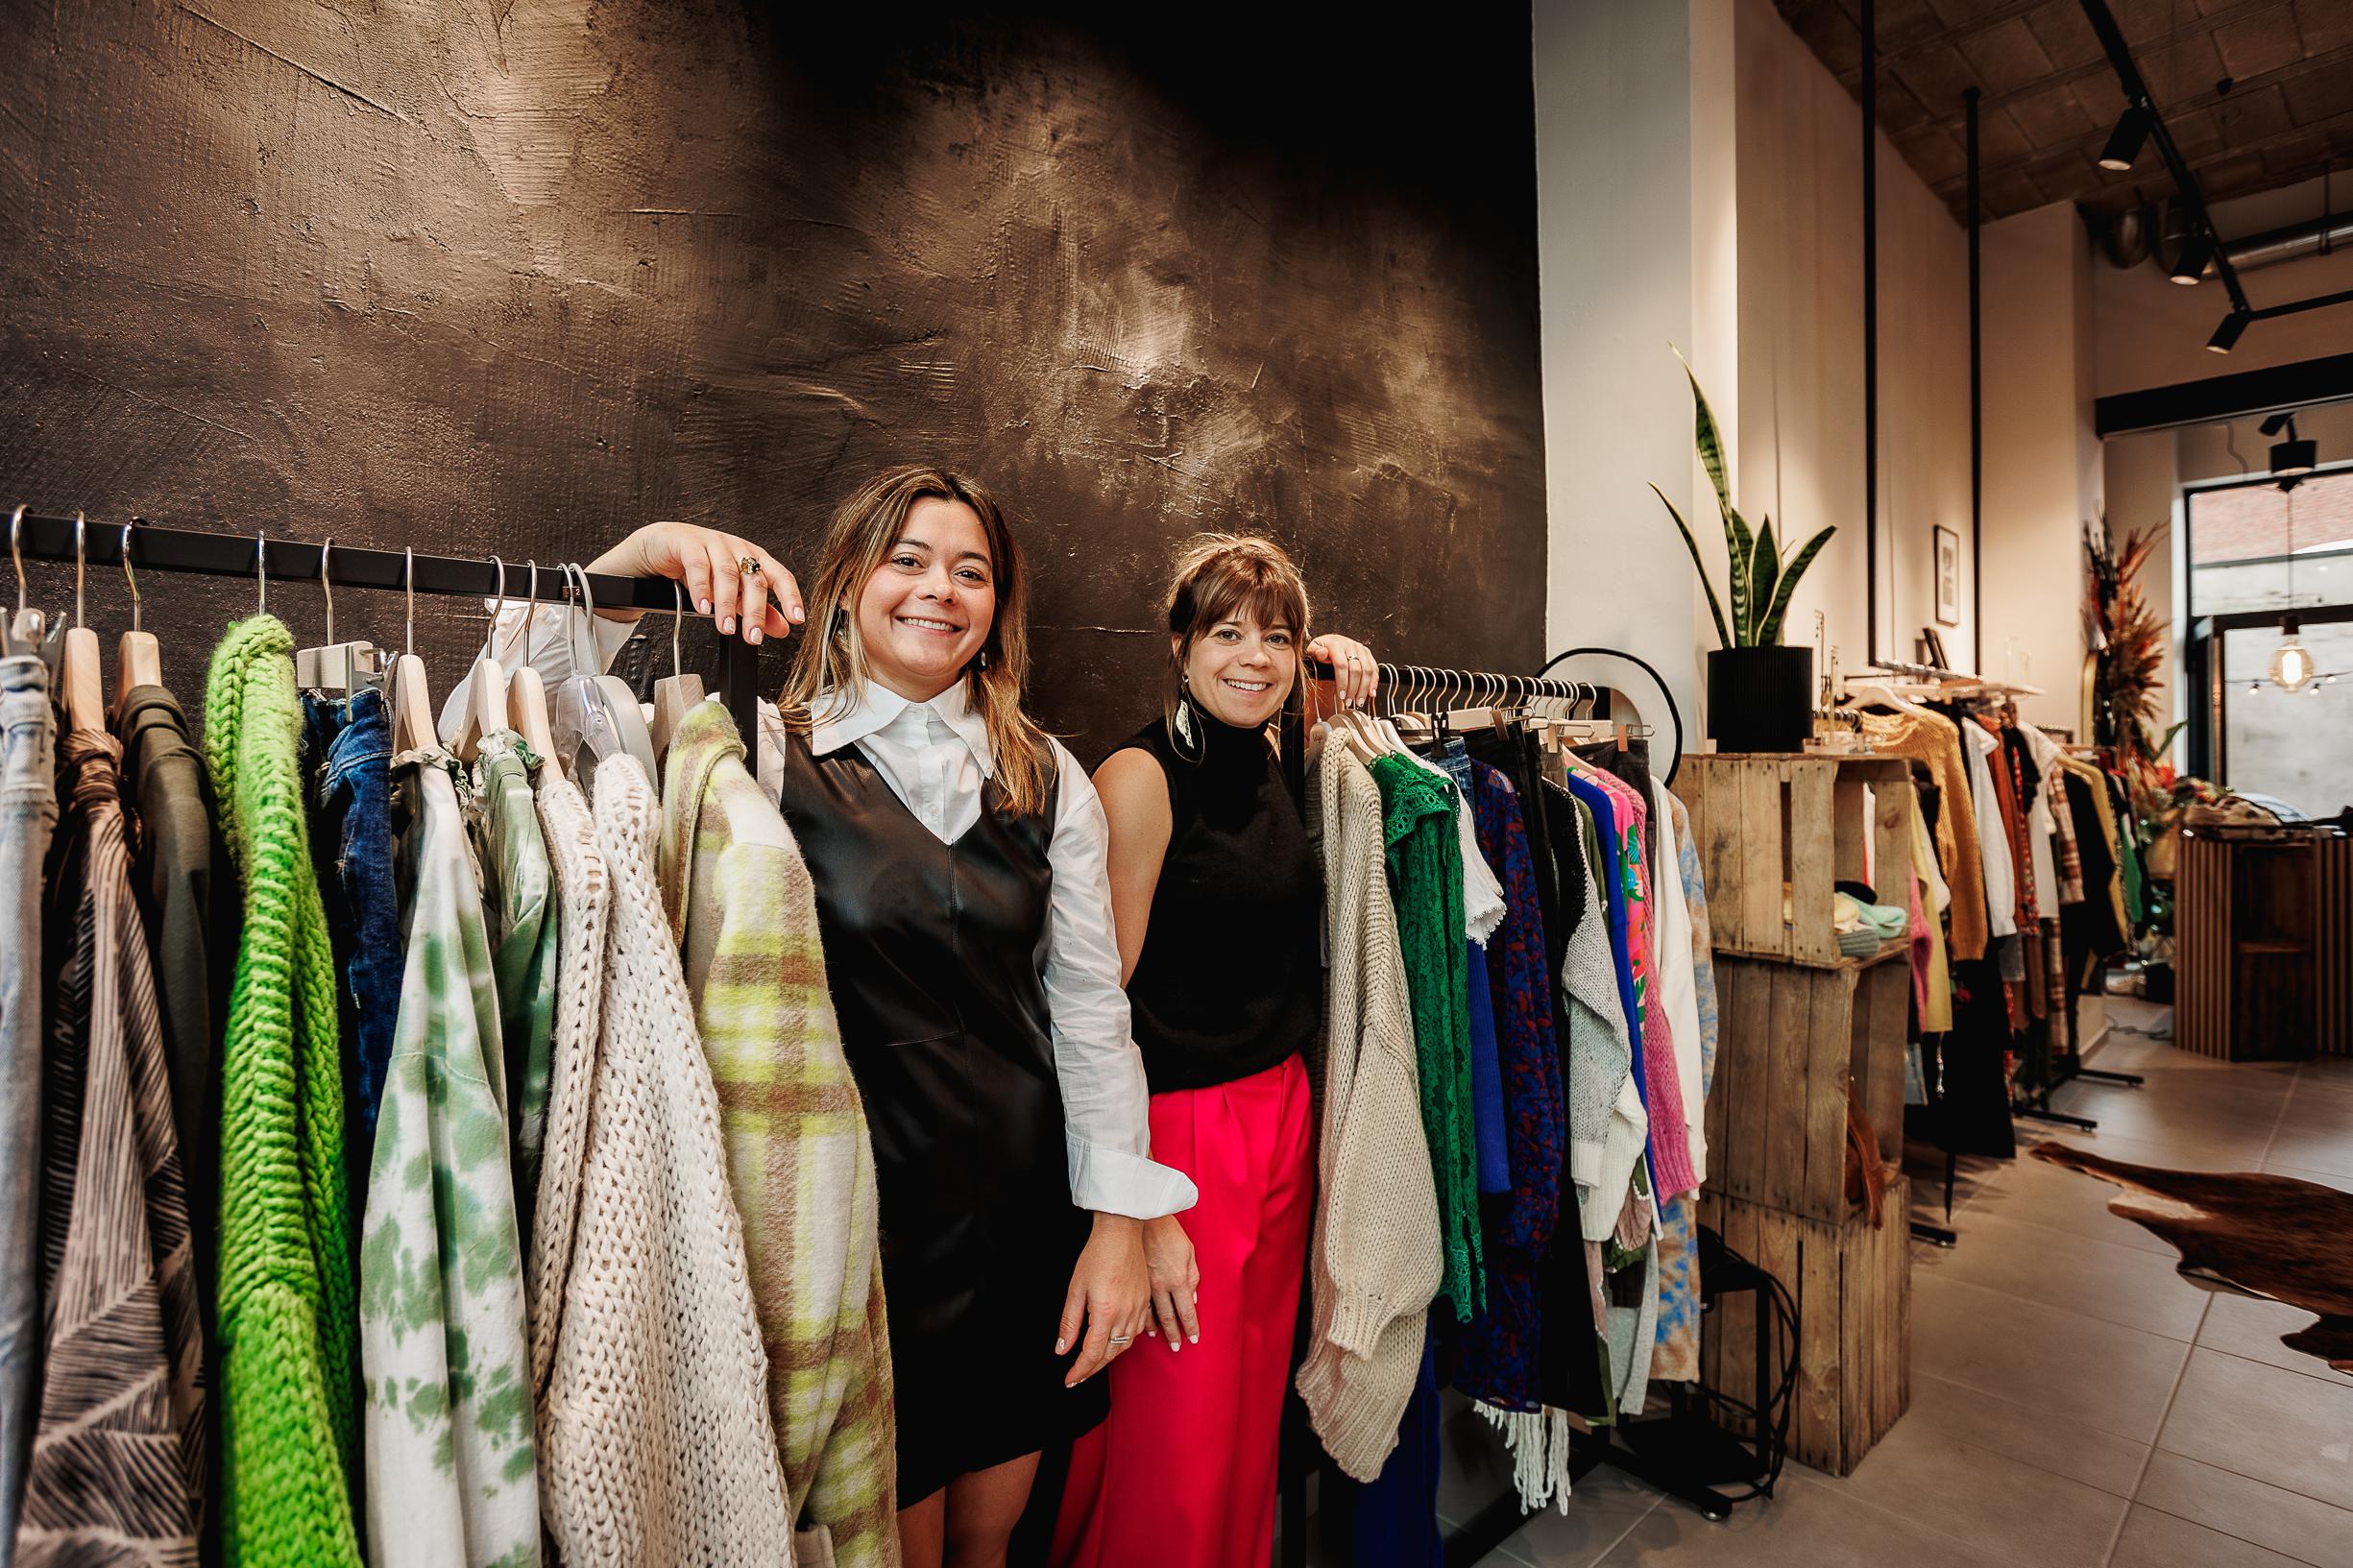 bevel vrouwelijk Tapijt Zussen openen kledingwinkel Sisters in hartje Mechelen: “Wij wilden meer  doen met onze passie voor mode” (Mechelen) | Het Nieuwsblad Mobile